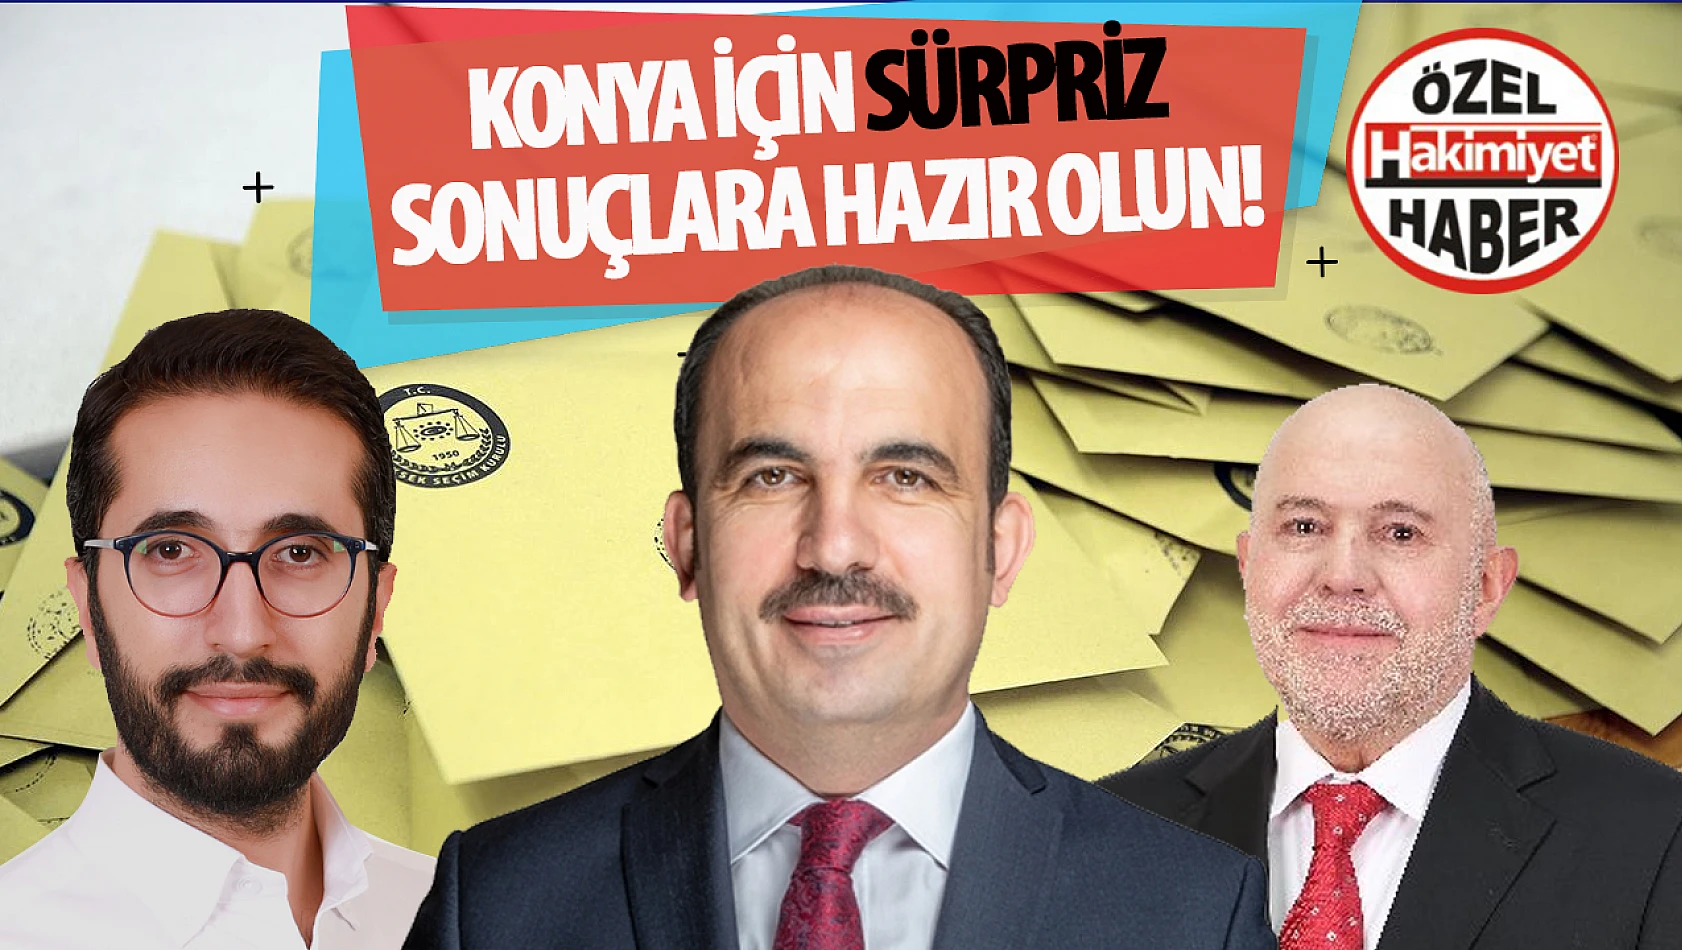 Konya'da 2019 Seçimlerinde Hangi Parti Ne Kadar Oy Aldı, 31 Mart'ta Konya'yı Nasıl Bir Sürpriz Bekliyor?